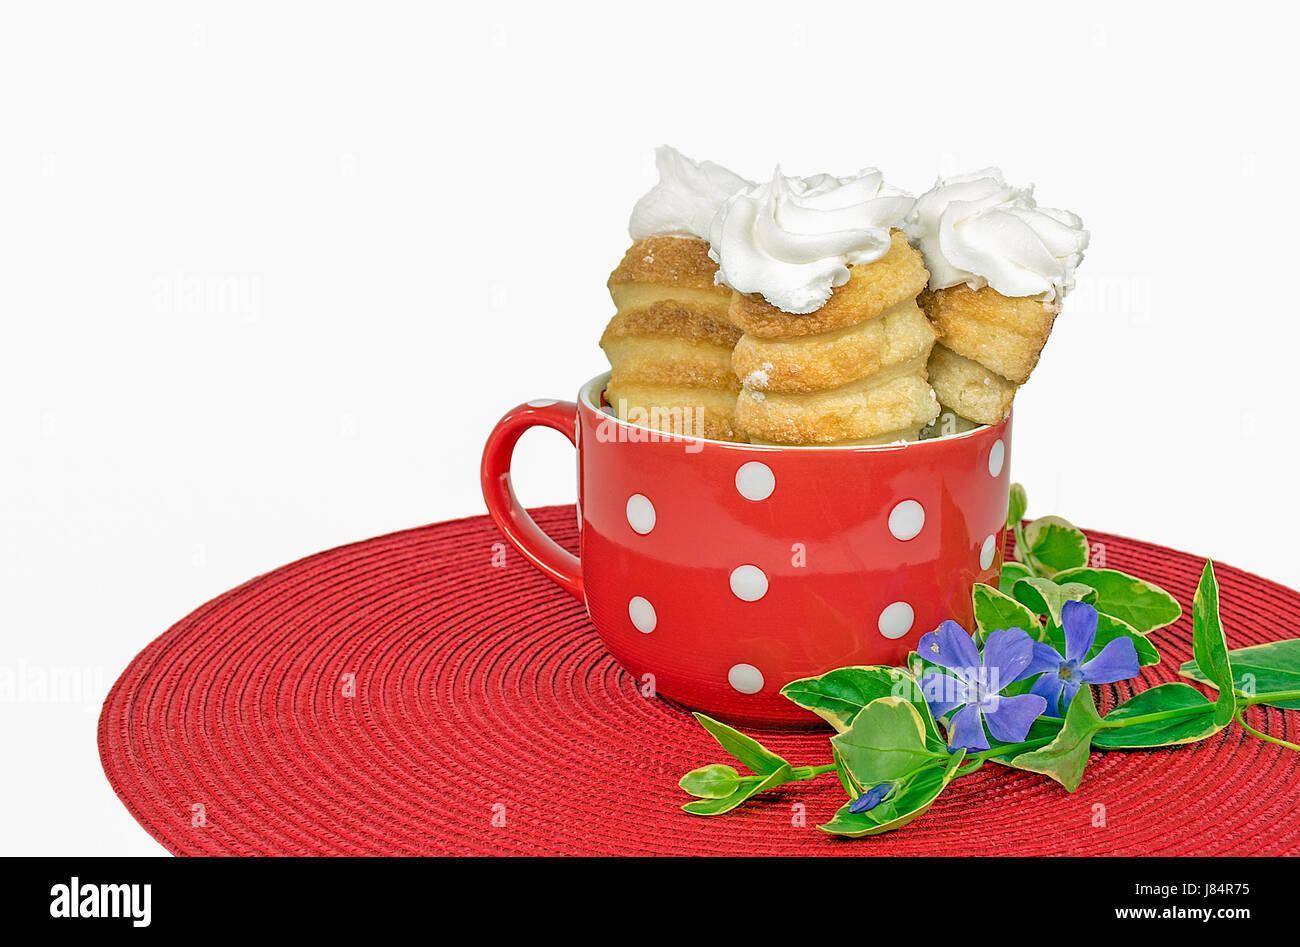 Corne crème pâtisserie dans polka dot tasse avec fleur de myrte sur place ronde rouge mat Banque D'Images